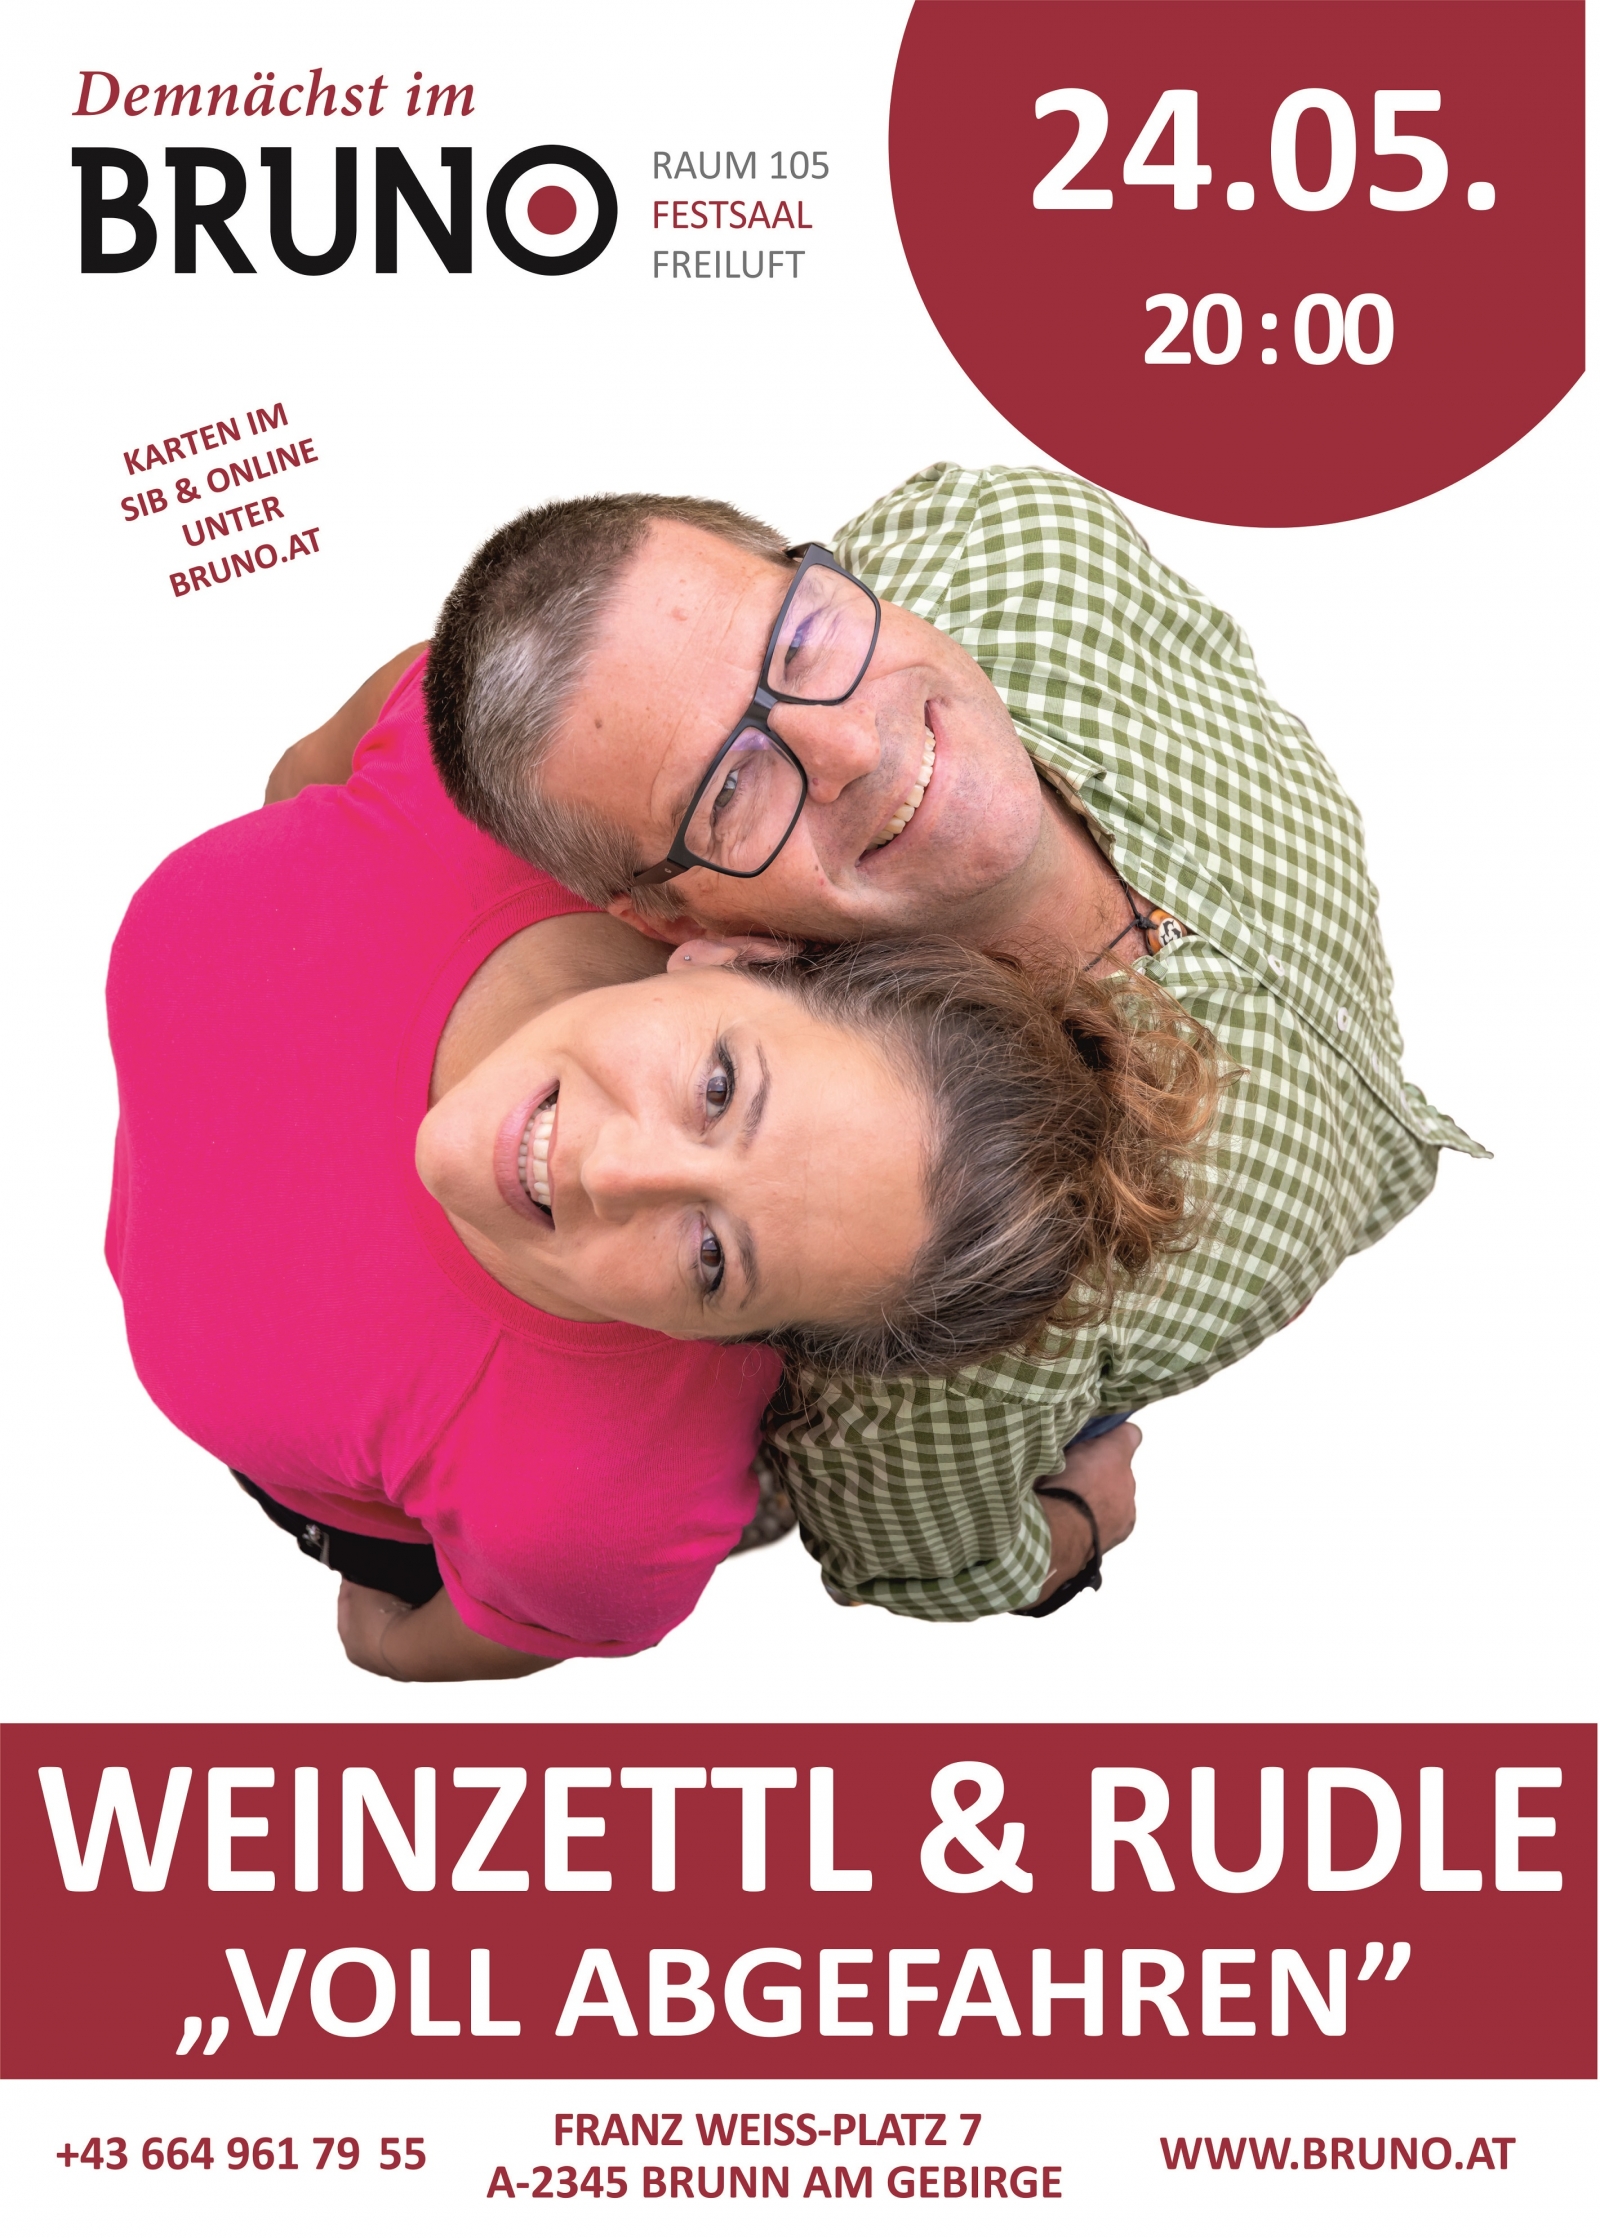 Weinzettl & Rudle Voll abgefahren